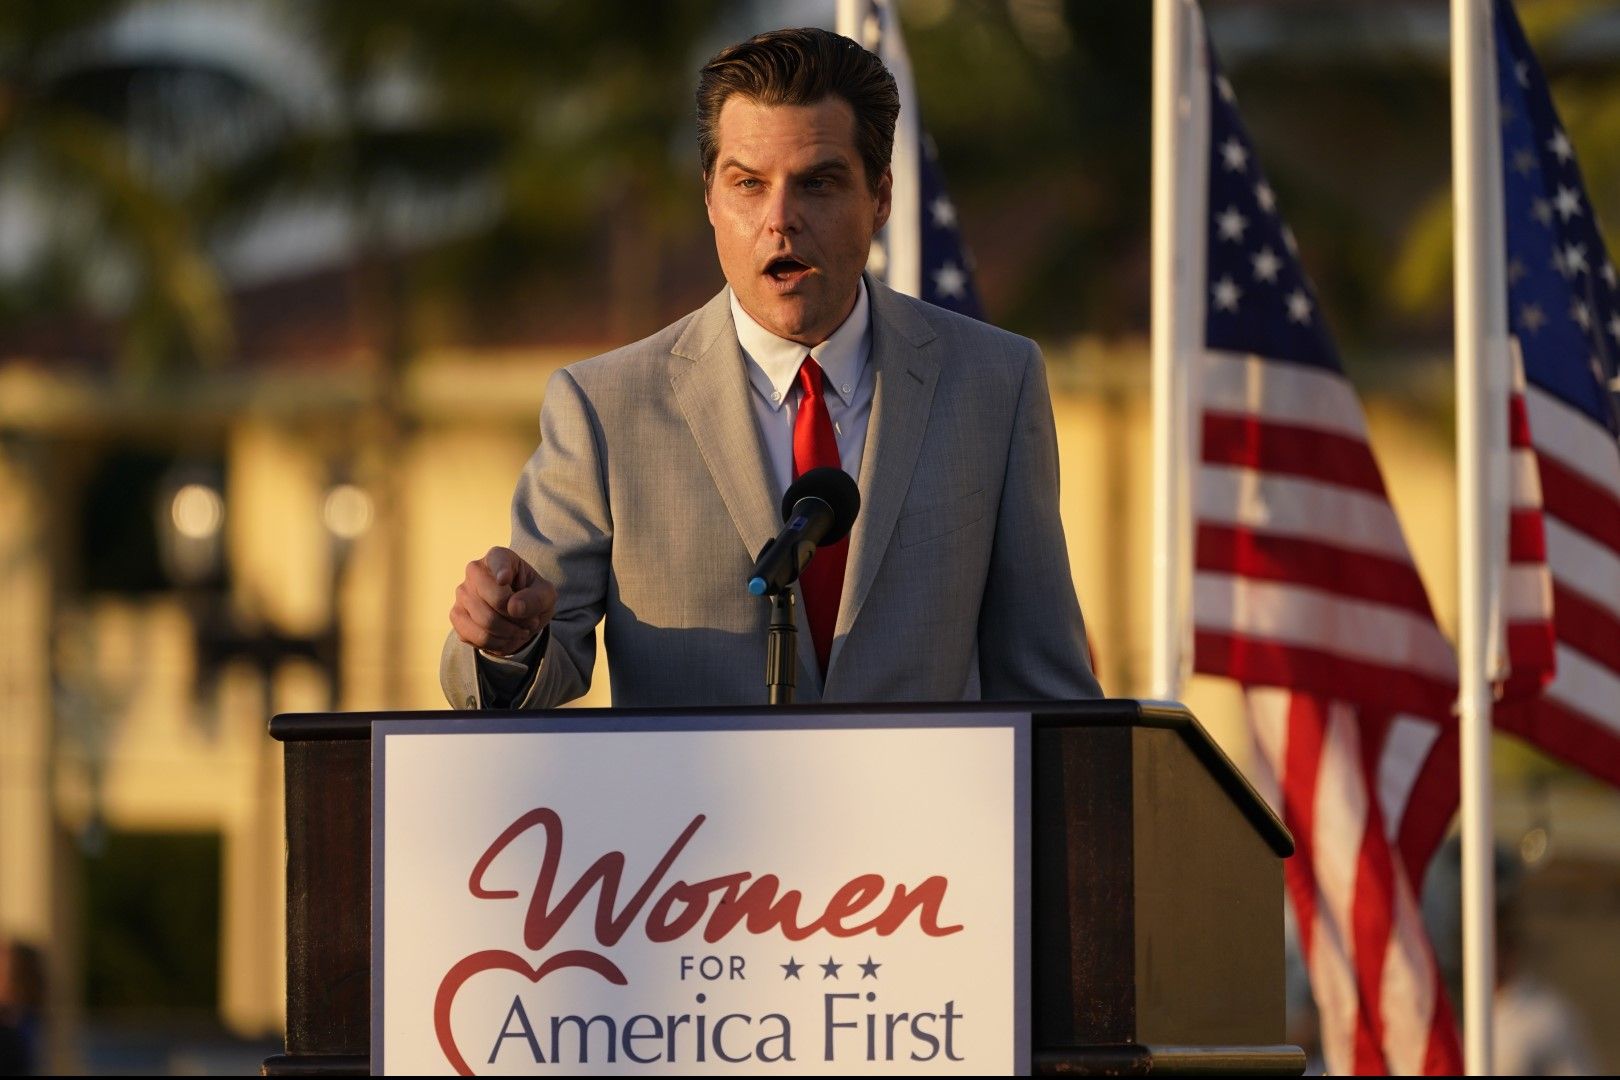 В реч на среща под надслов "Жени за "Америка на първо място"" в курорт на Тръмп в Маями, щата Флорида, конгресменът Мат Гейц разкритикува "безумните конспиративни теории"